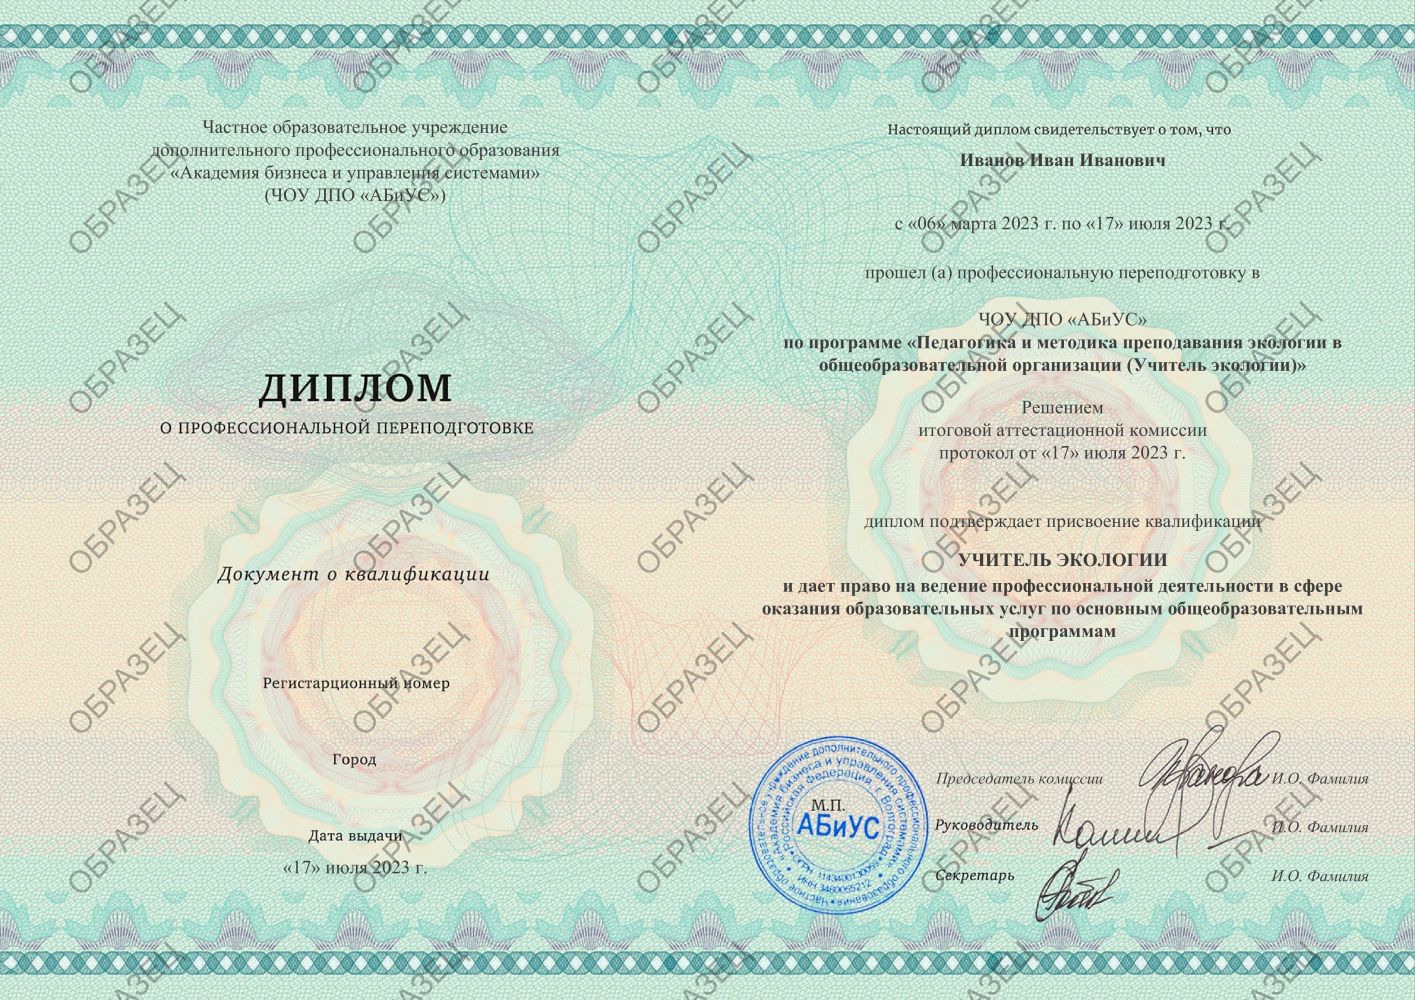 Диплом Педагогика и методика преподавания экологии в общеобразовательной организации (Учитель экологии) 510 часов 9250 руб.